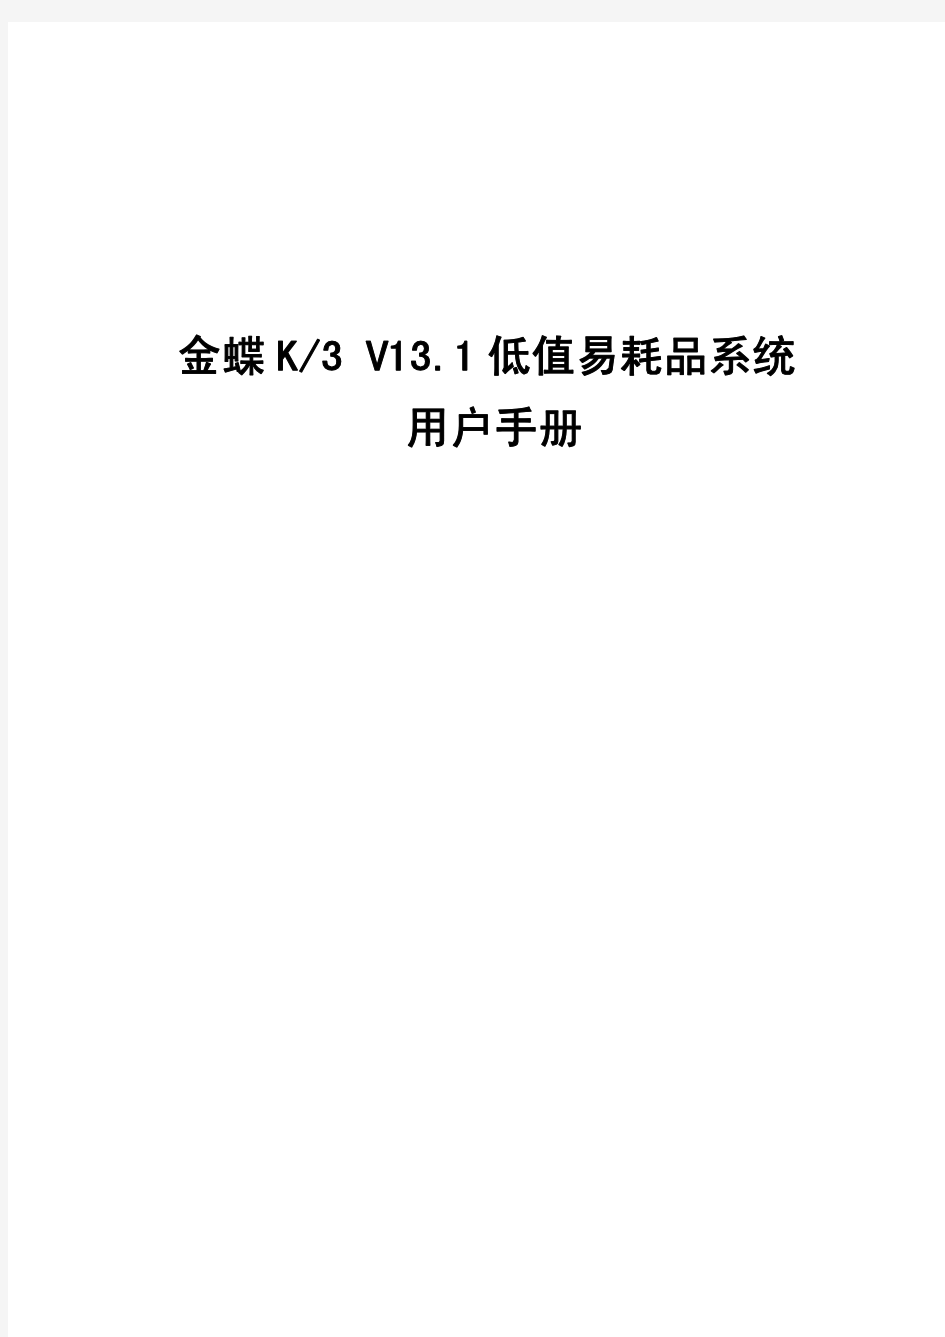 金蝶K3 V13.1低值易耗品系统用户手册